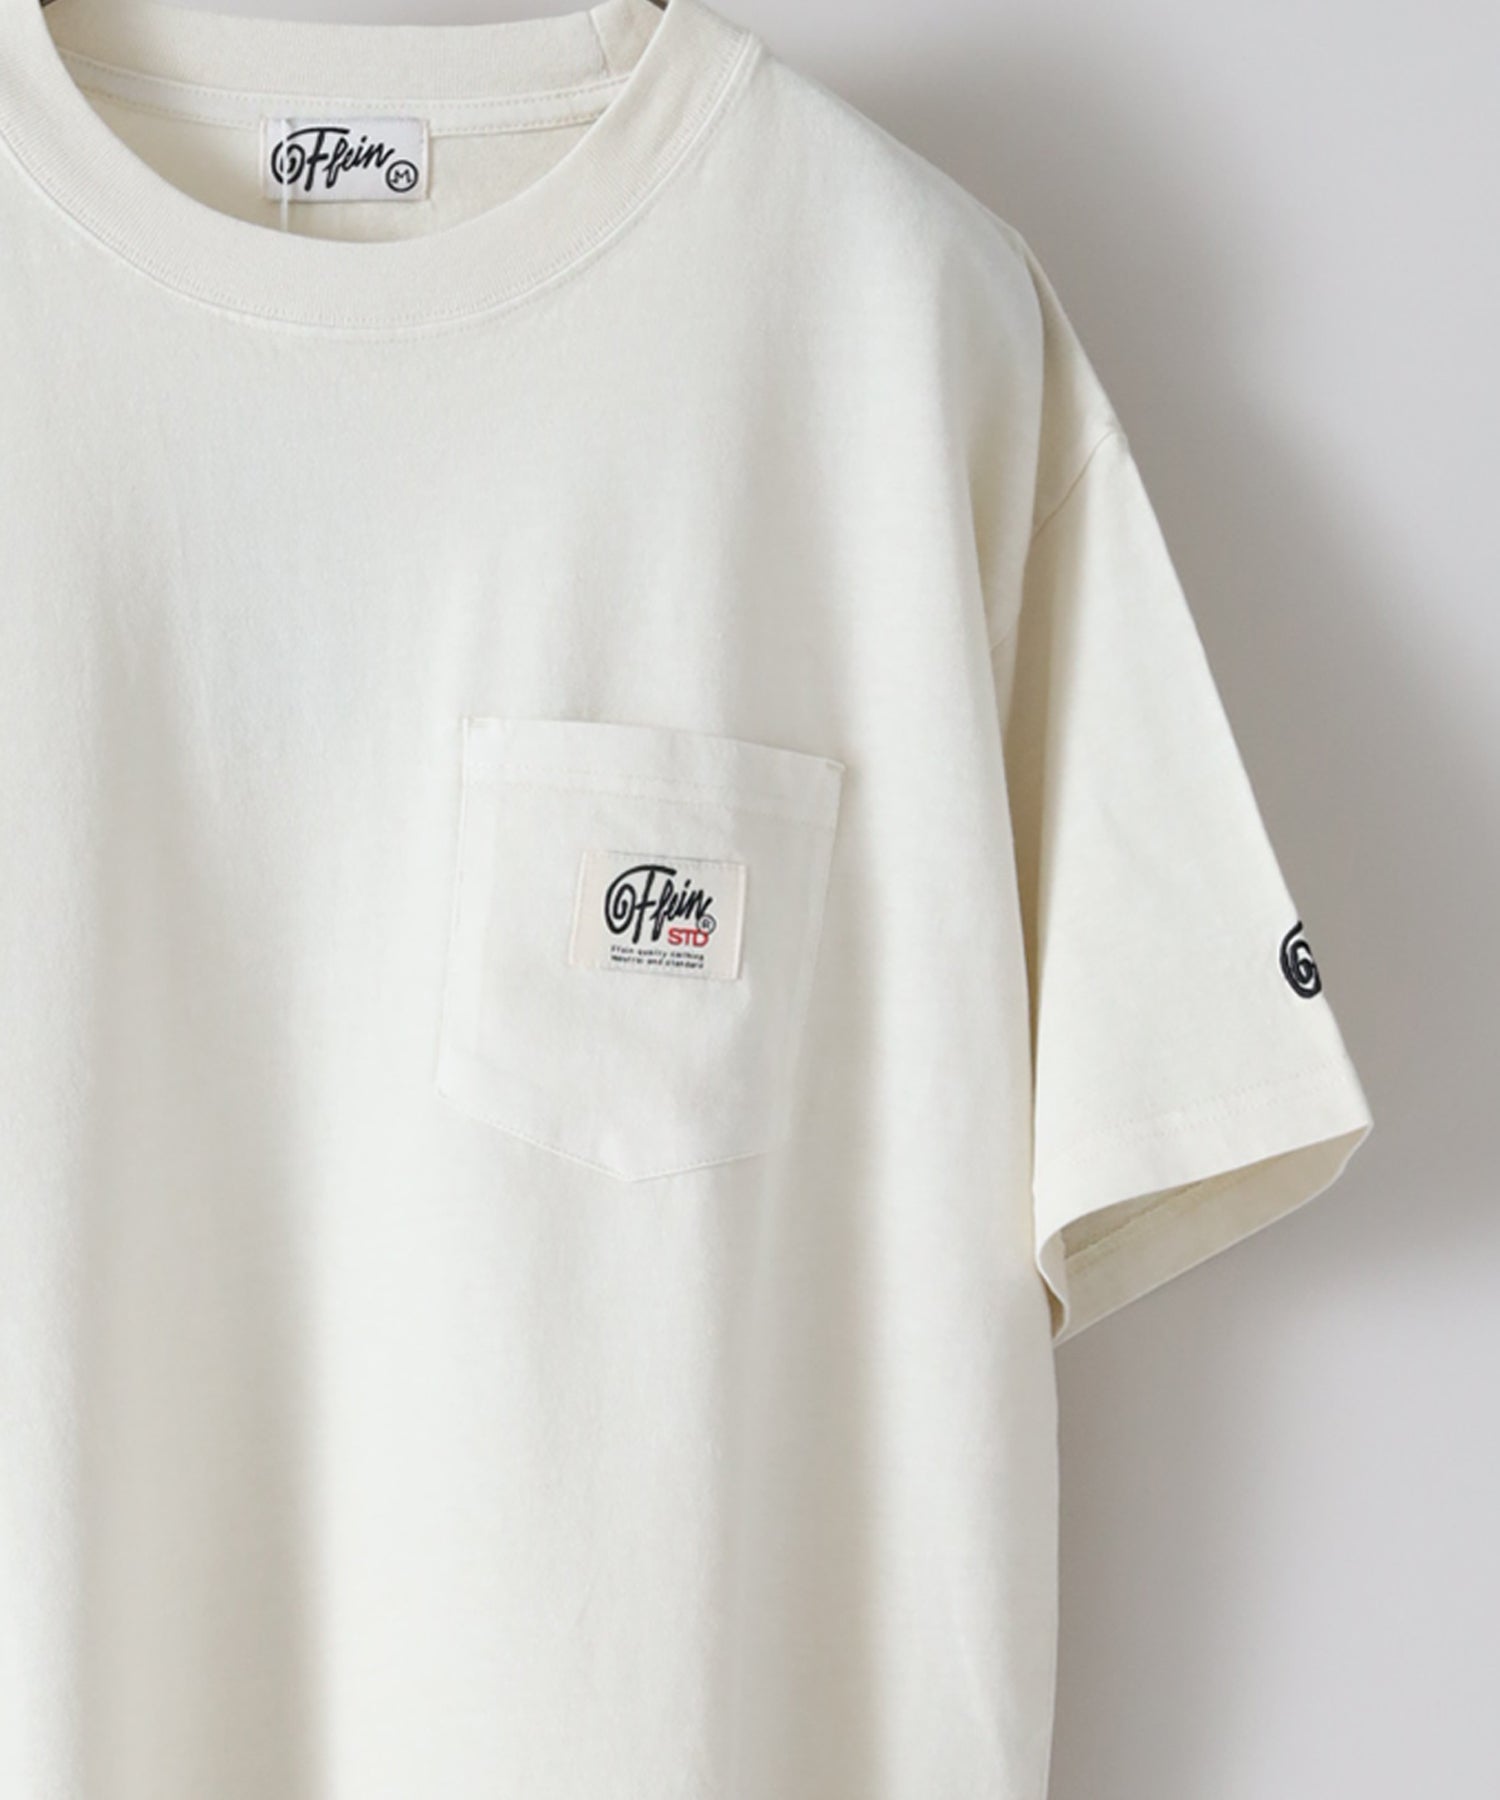 KITH TOKYO ARCHIVES TEE 黒 Mサイズ Tシャツ